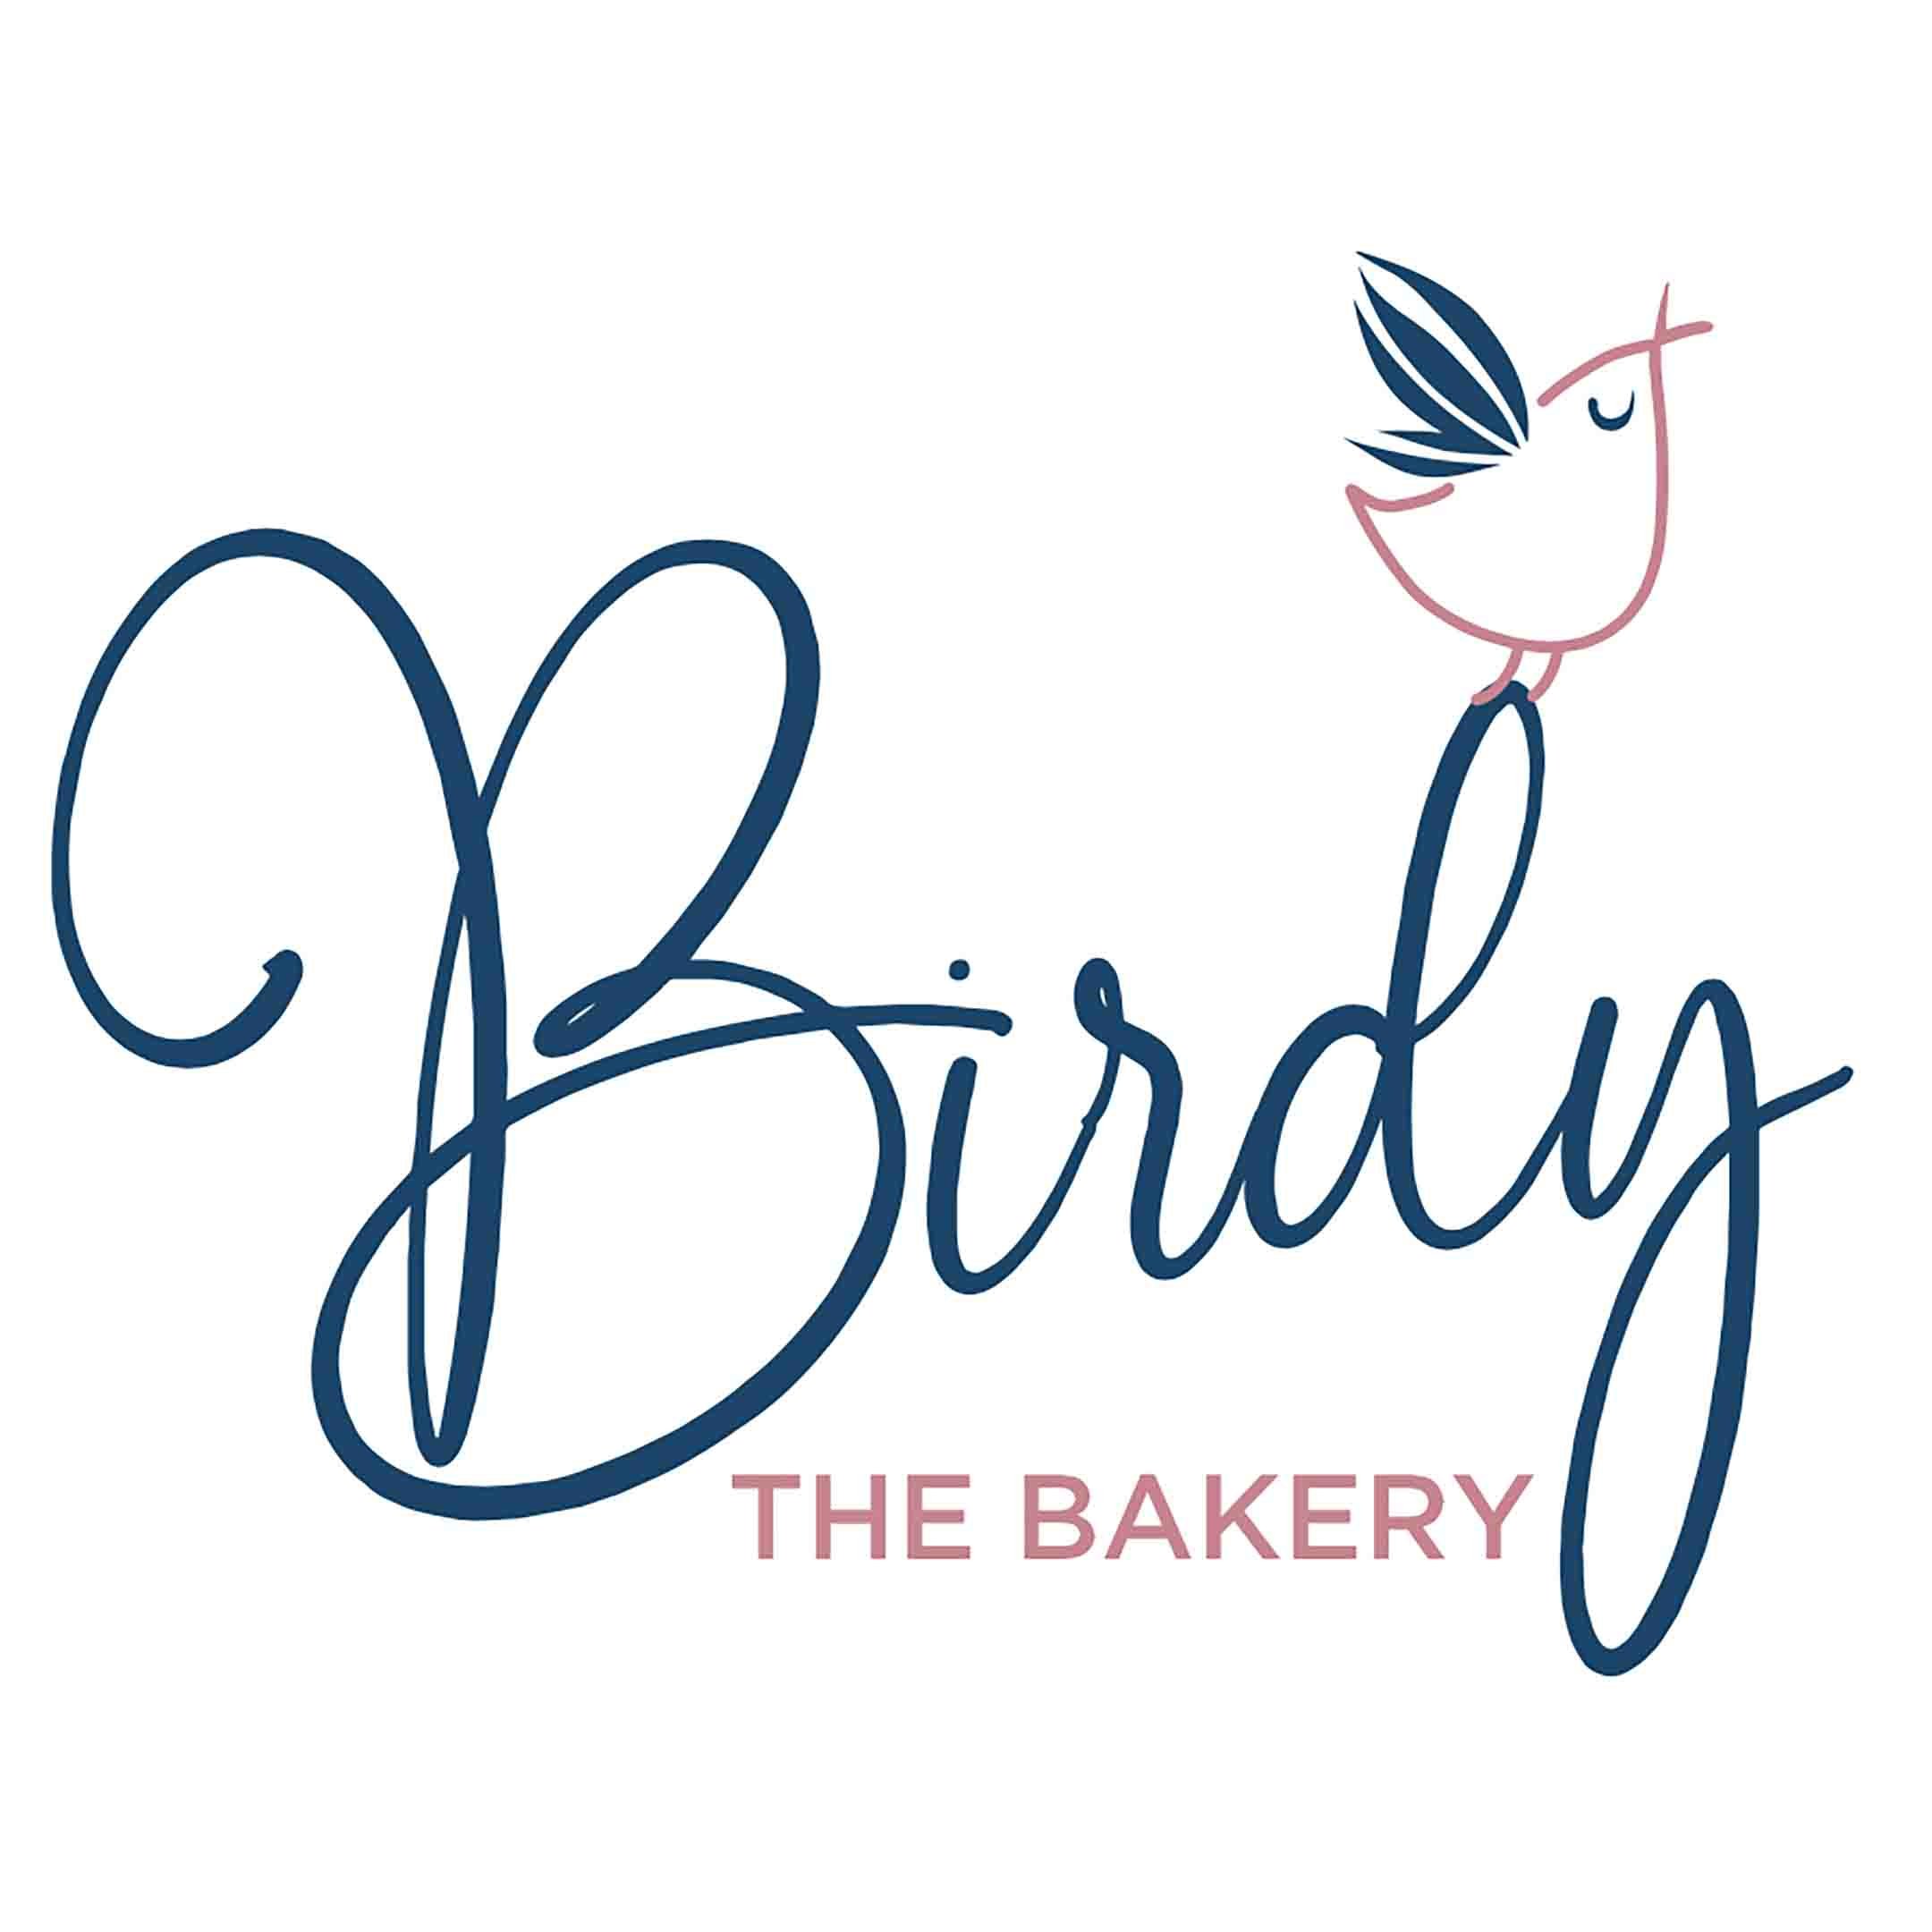 4. 1x1 Birdy The Bakery 2023.jpg